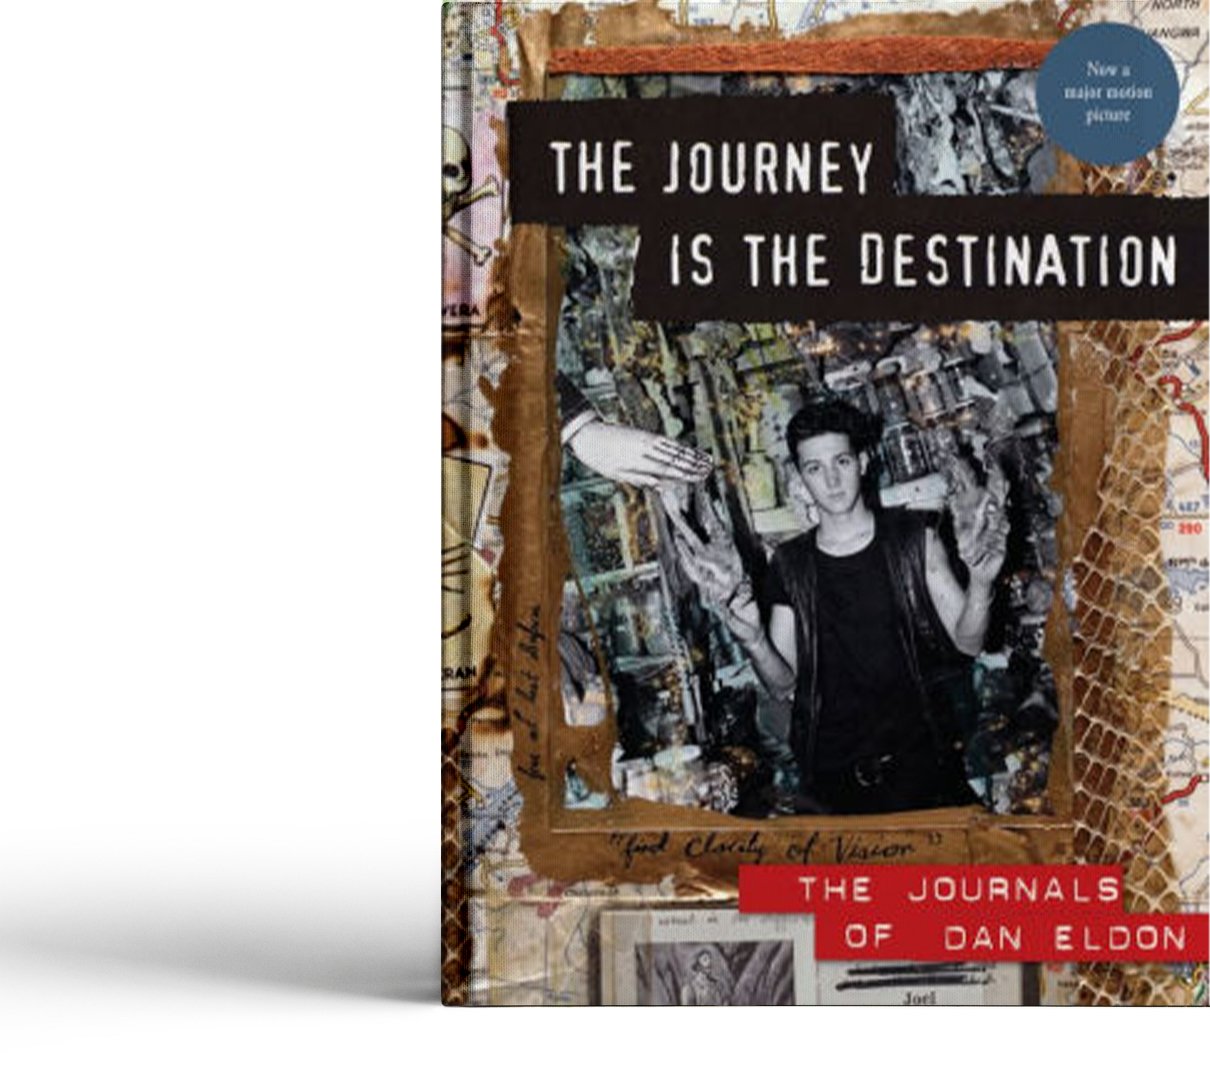 The Journey is the Destination - The Journals of Dan Eldon